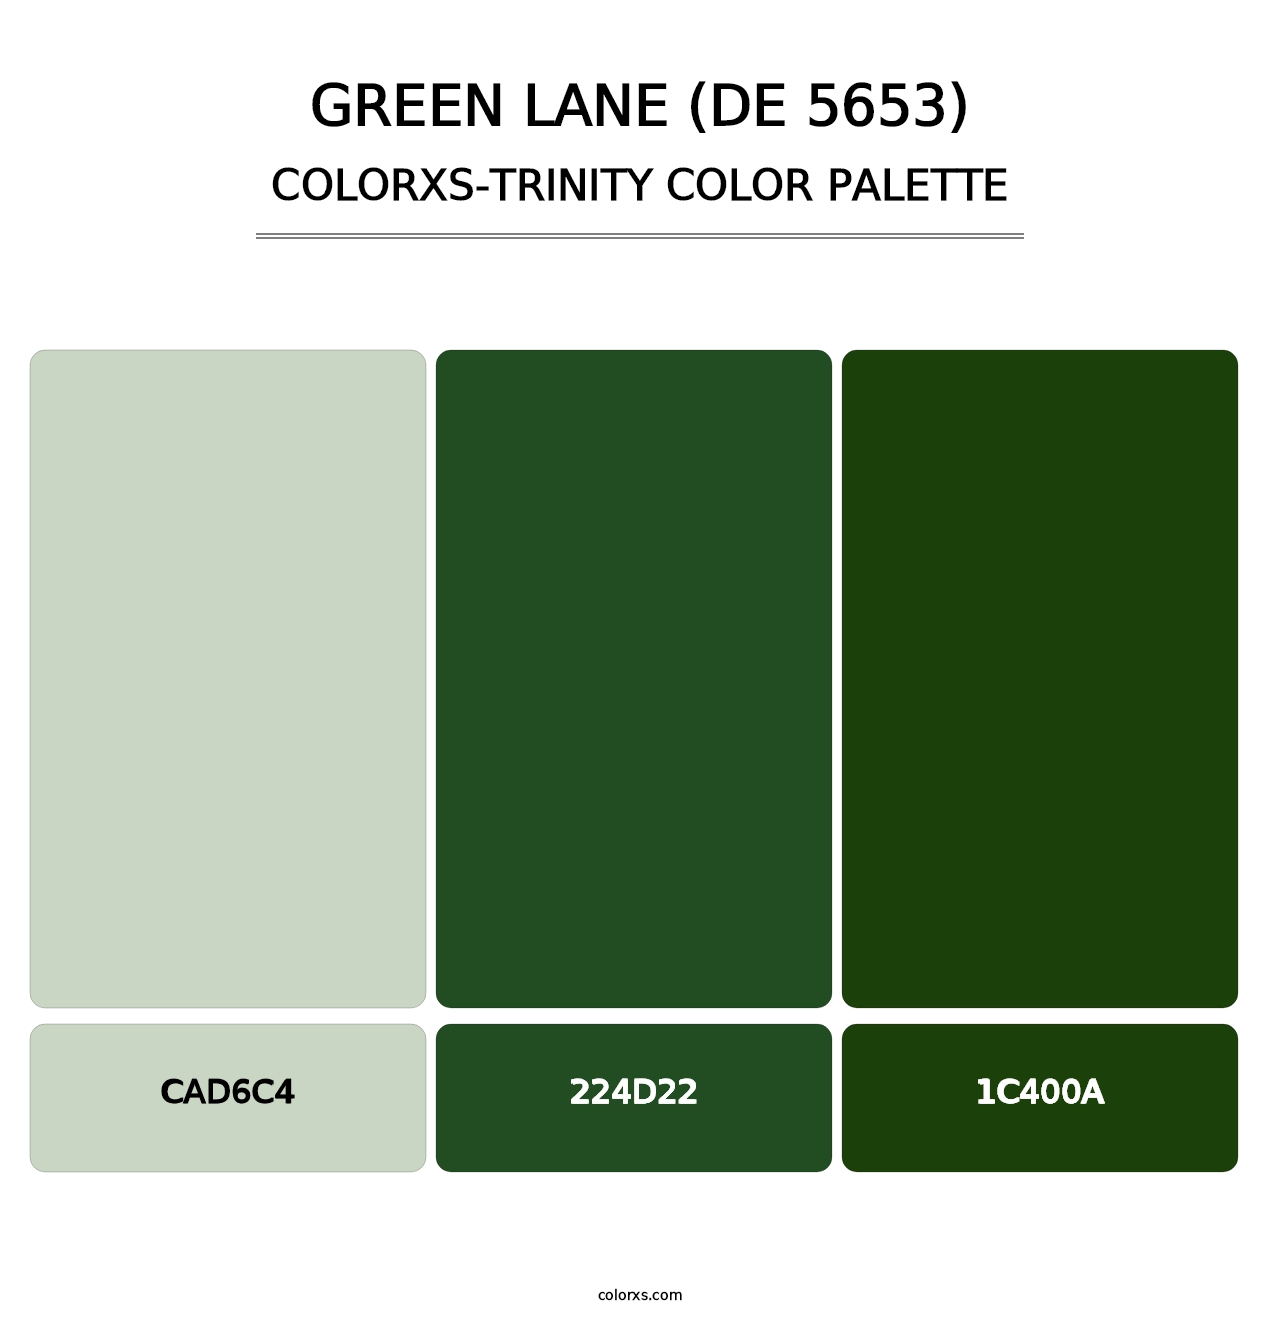 Green Lane (DE 5653) - Colorxs Trinity Palette